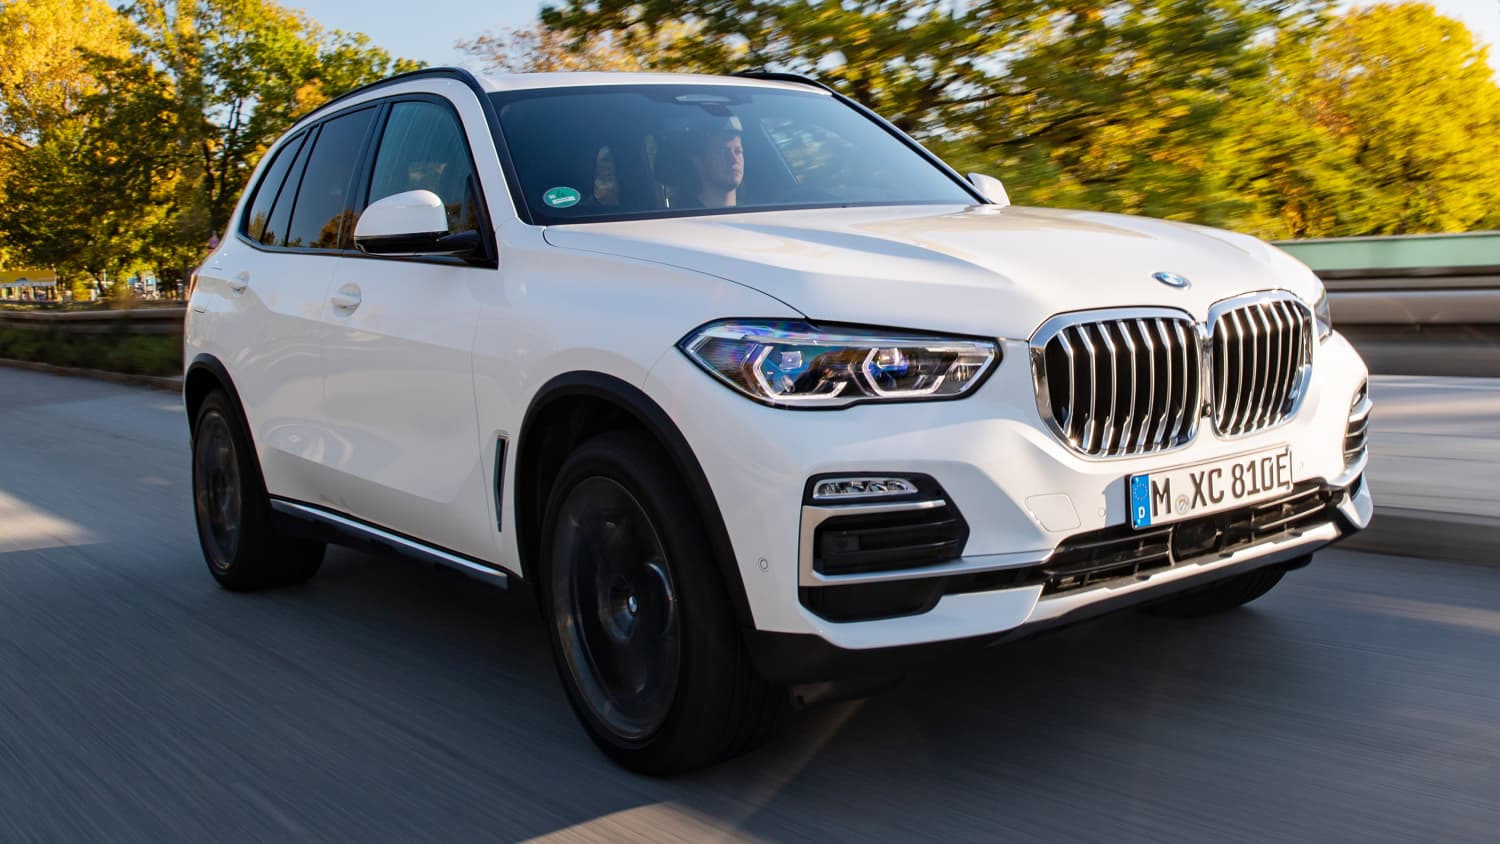 BMW X5 (G05): Modelle, technische Daten, Hybrid & Preise